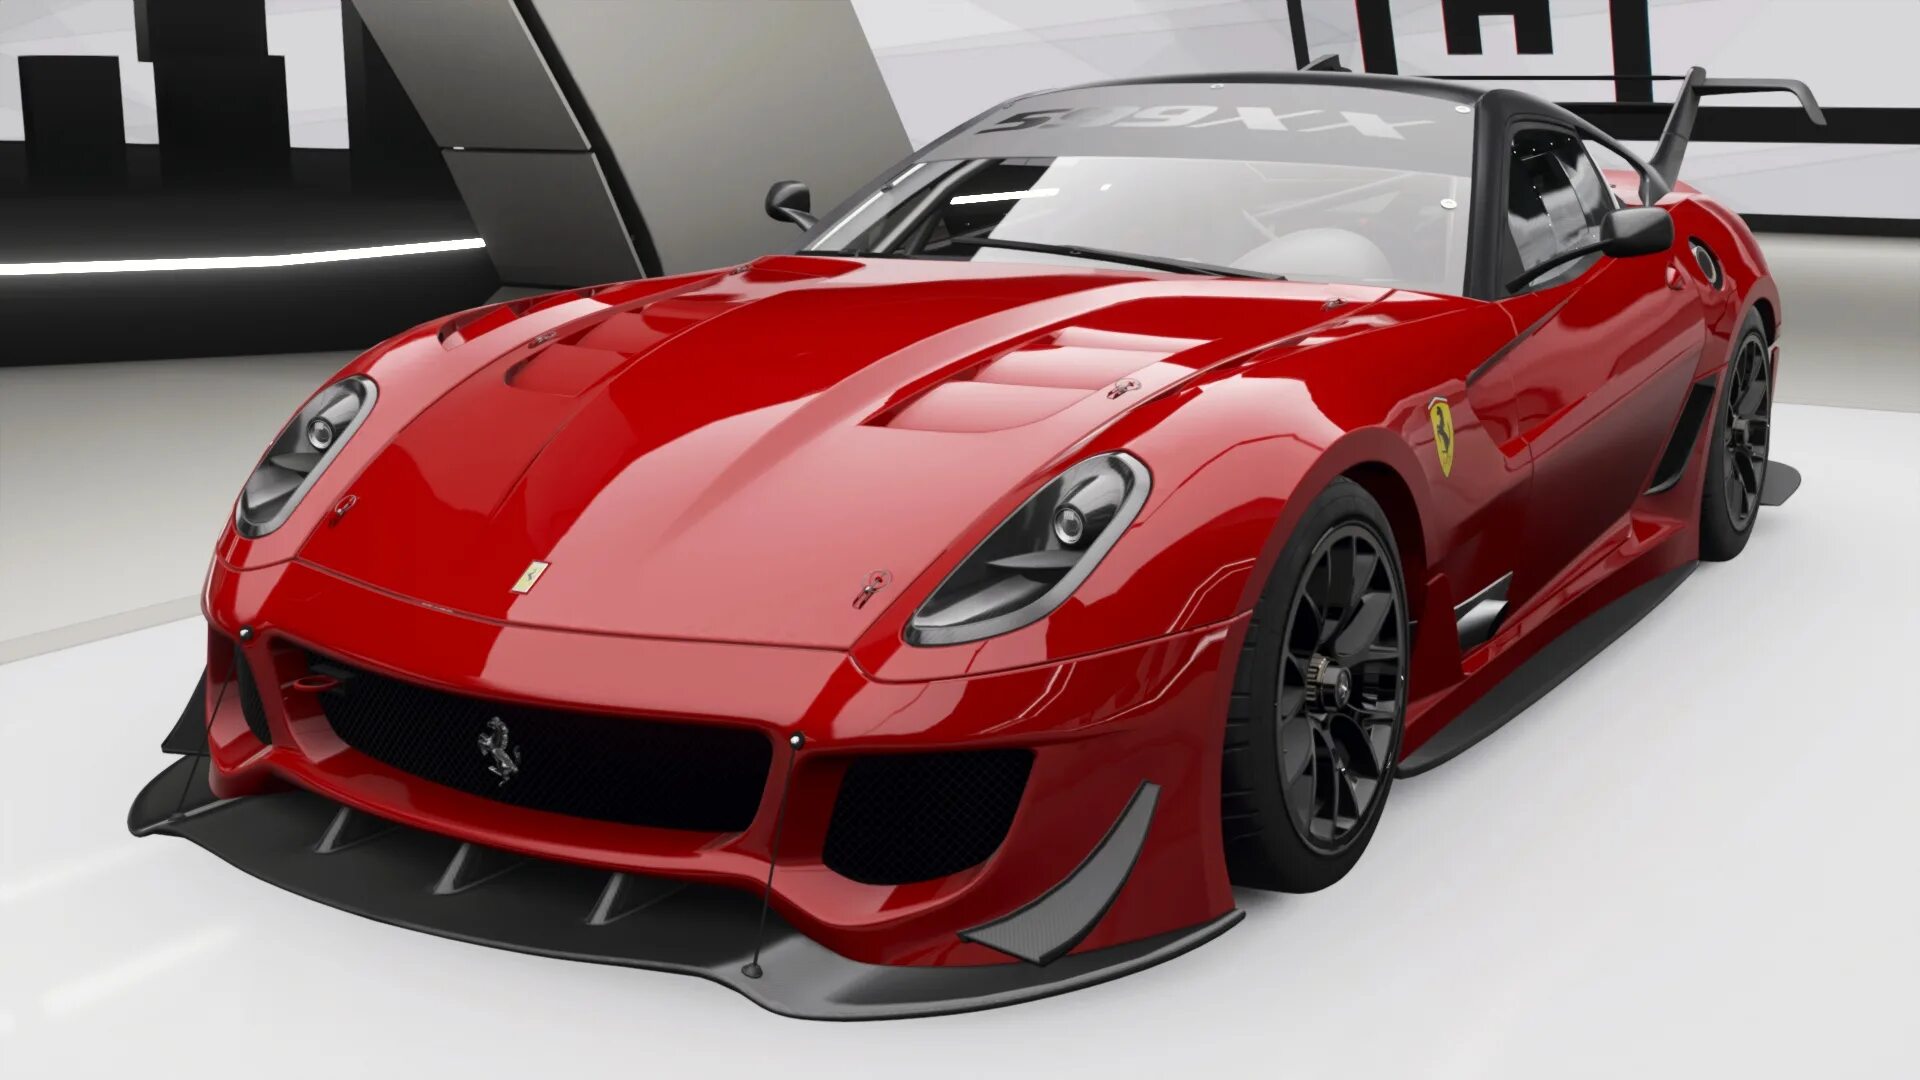 Forza horizon 4 ferrari. Ferrari 599xx EVO. Ferrari 599xx EVO Forza Horizon. Ferrari 599xx Forza Horizon. Ferrari 599xx Evolution Forza Horizon.